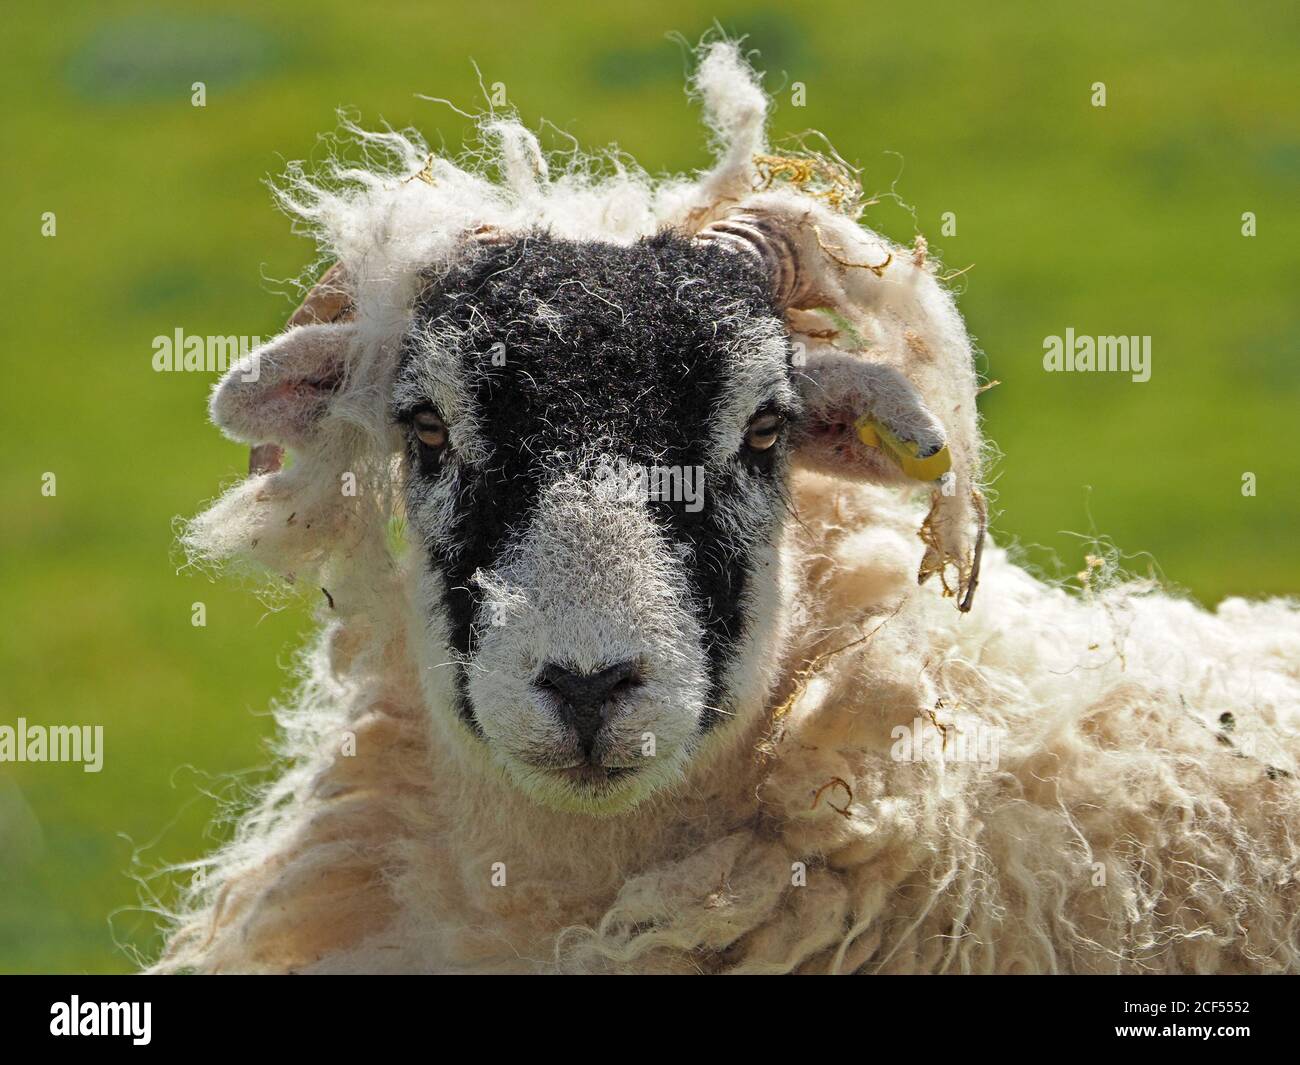 Mauvais cheveux jour - un mouton adulte avec la coiffure bangled comme il commence à jeter son polaire naturellement alors que le printemps se tourne vers l'été à Cumbria, Angleterre, Royaume-Uni Banque D'Images